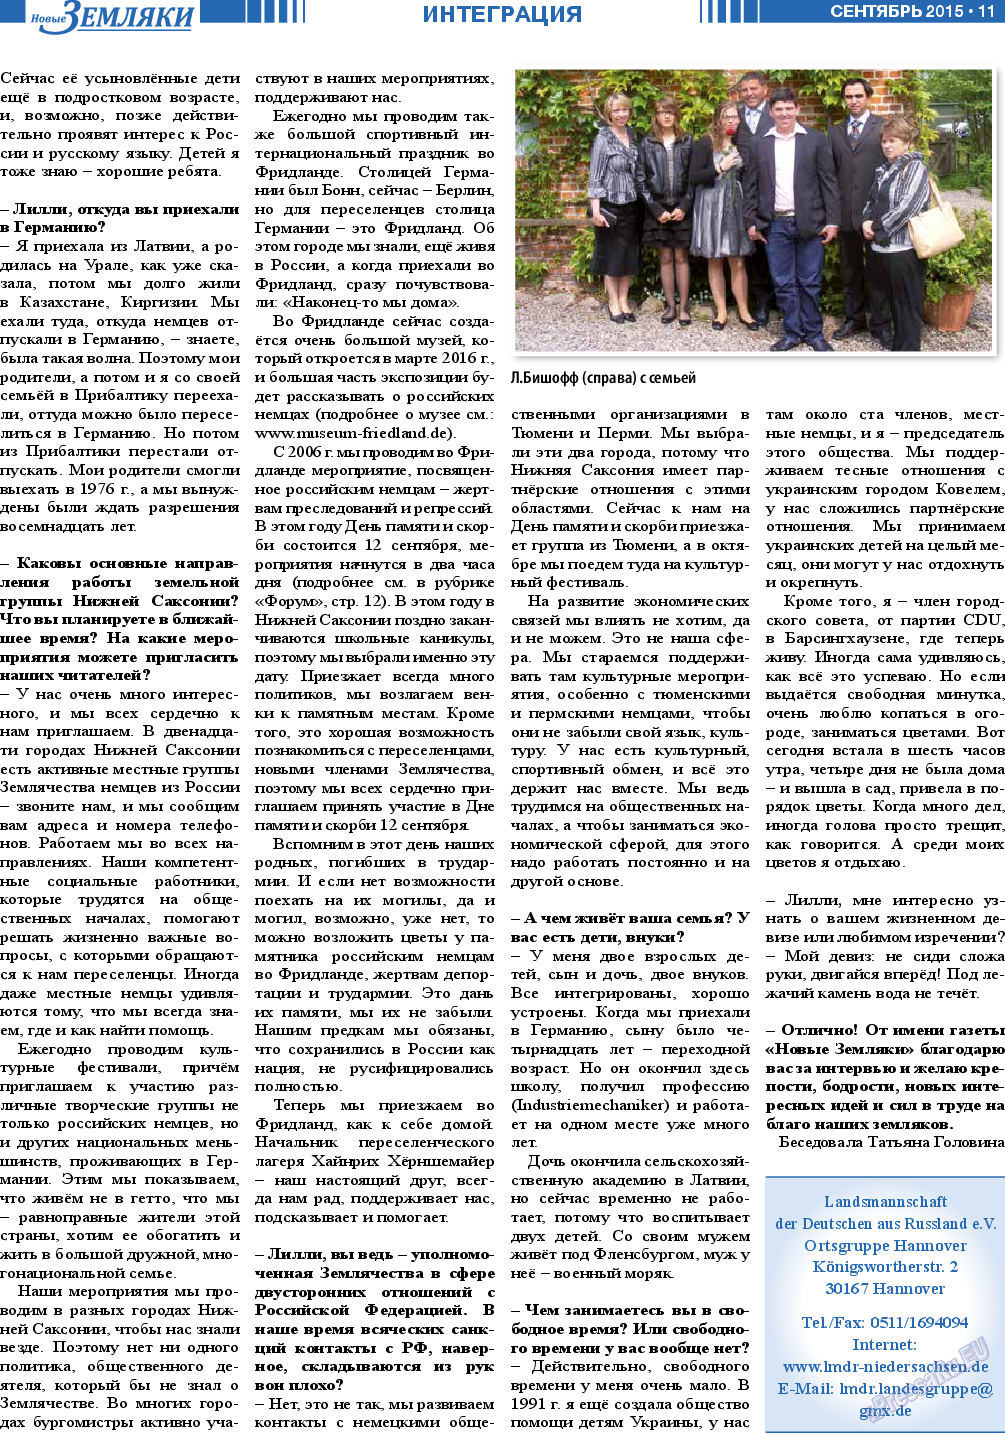 Новые Земляки, газета. 2015 №9 стр.11